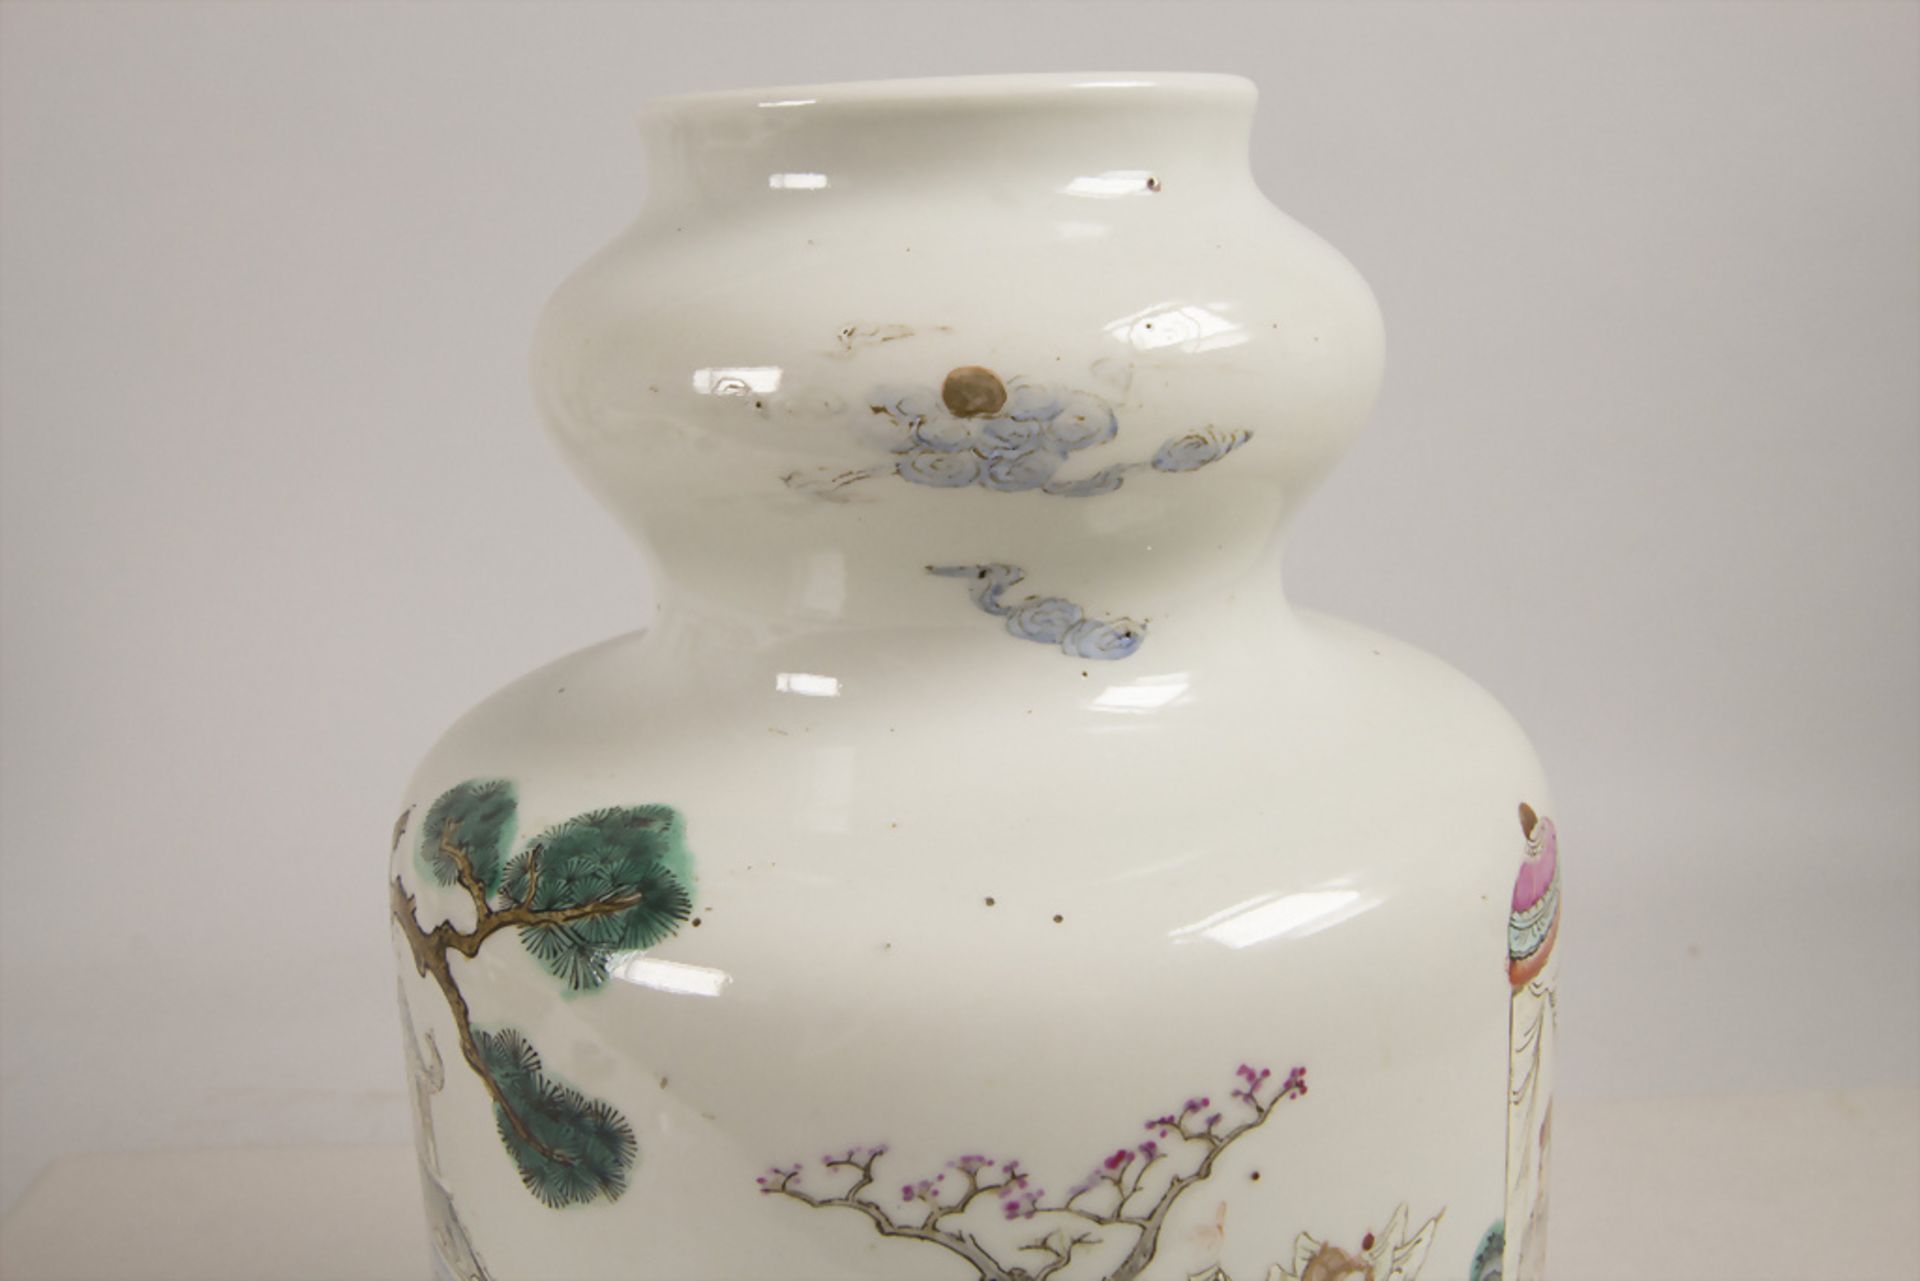 Ziervase / A decorative vase, China, Qing Dynastie (1644-1911), gemarkt Qianlong (1736-1795) - Bild 5 aus 10